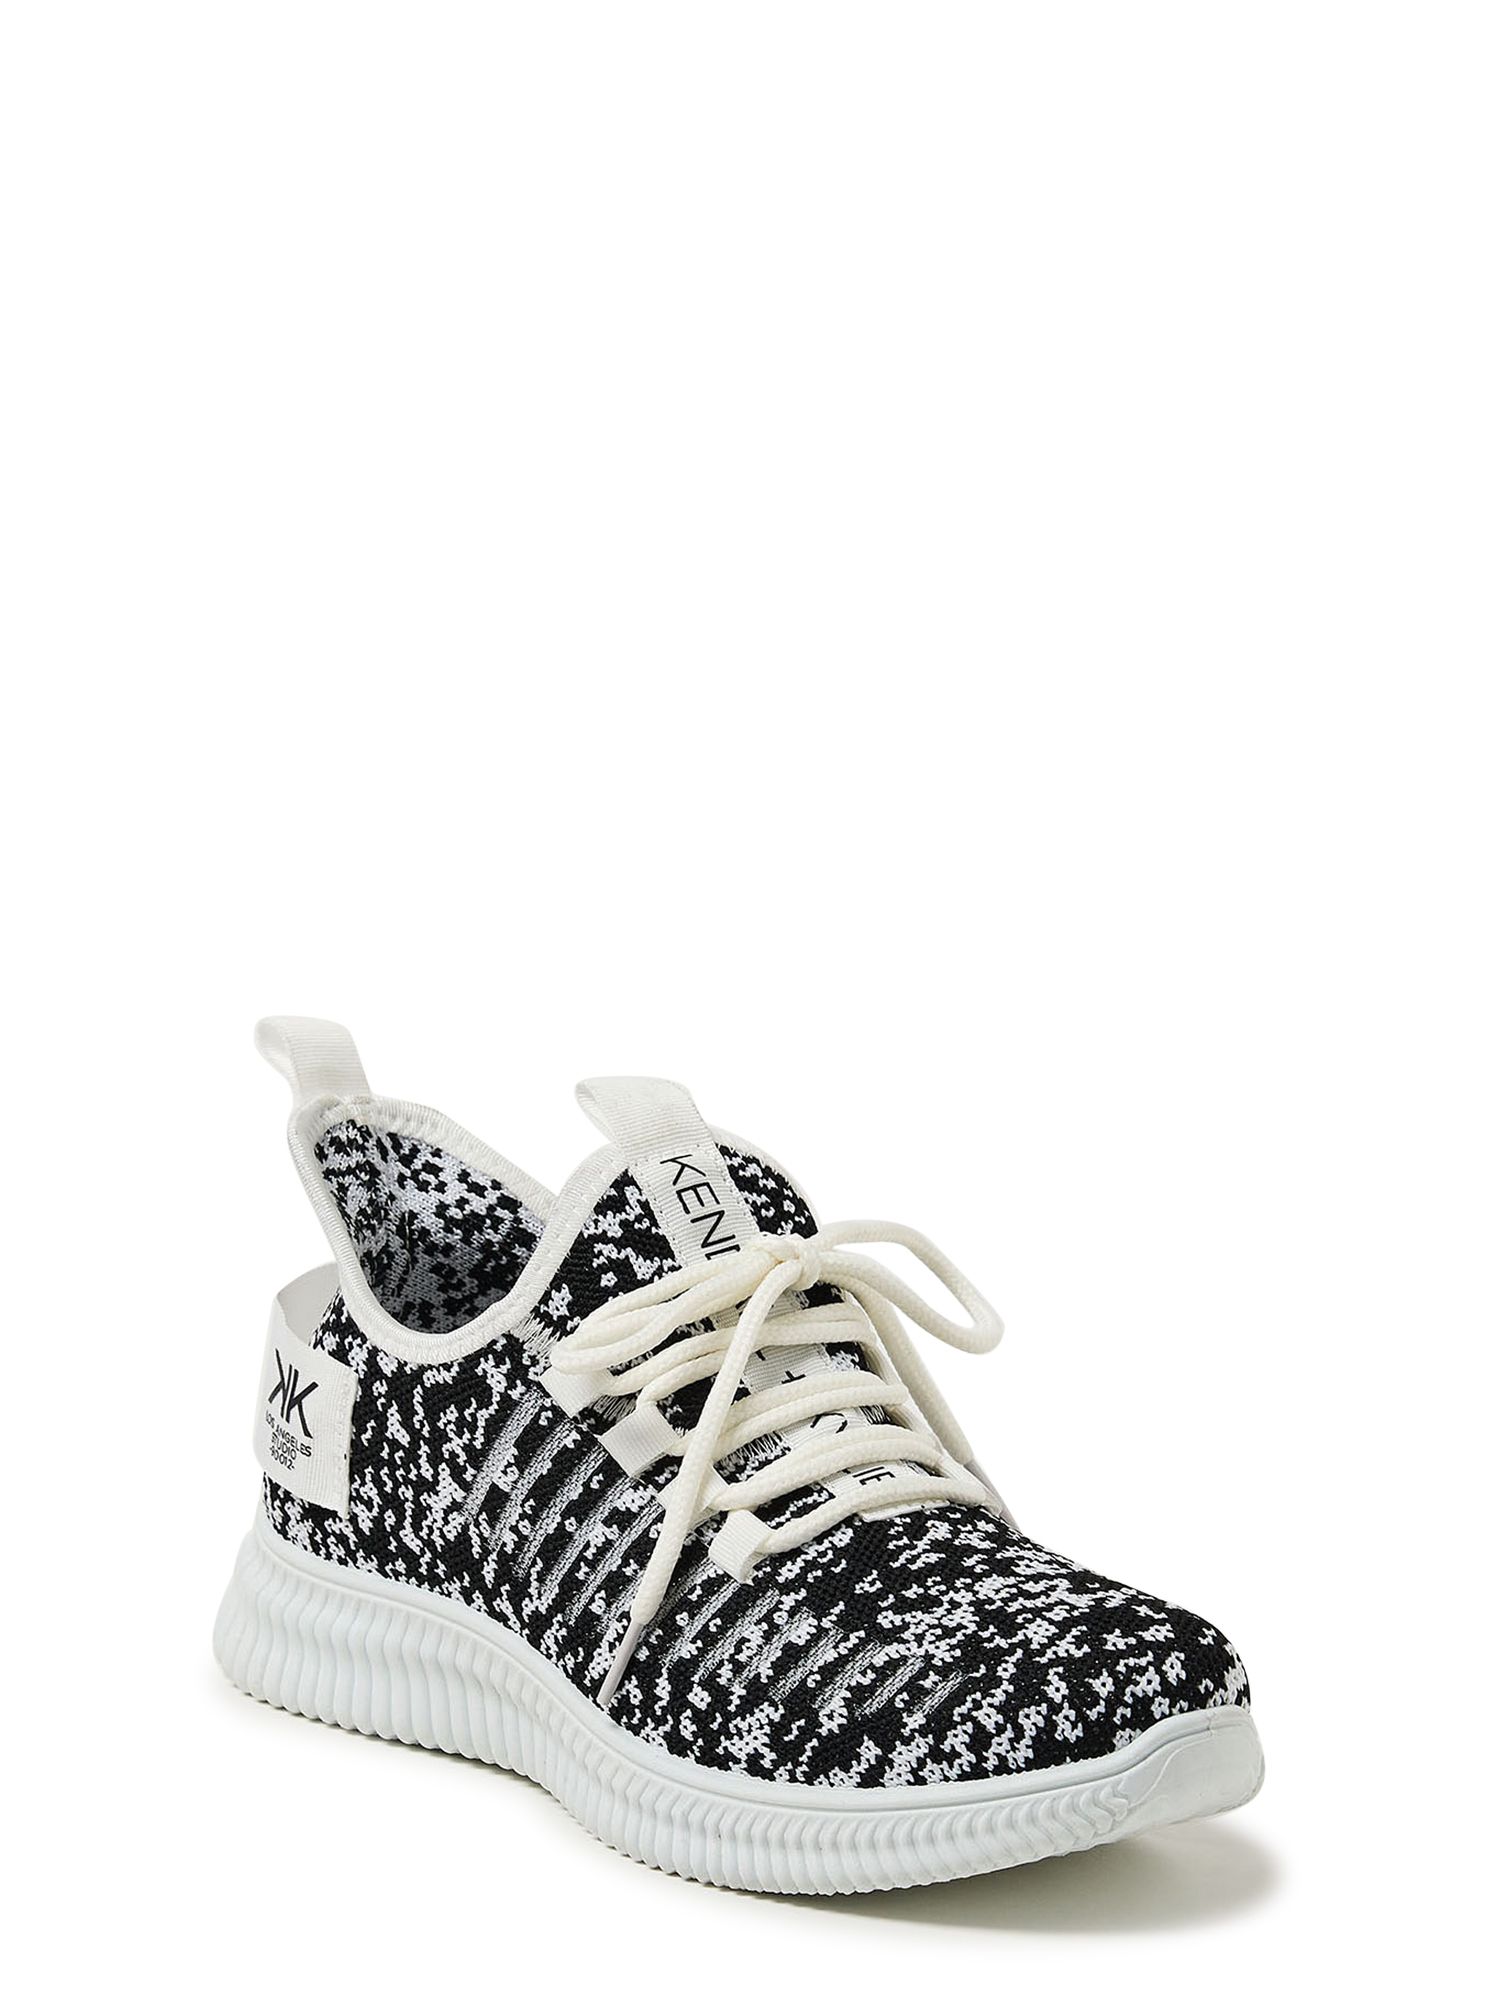 Kendall + Kylie Women's Ezora Knit Sneakers | Walmart (US)